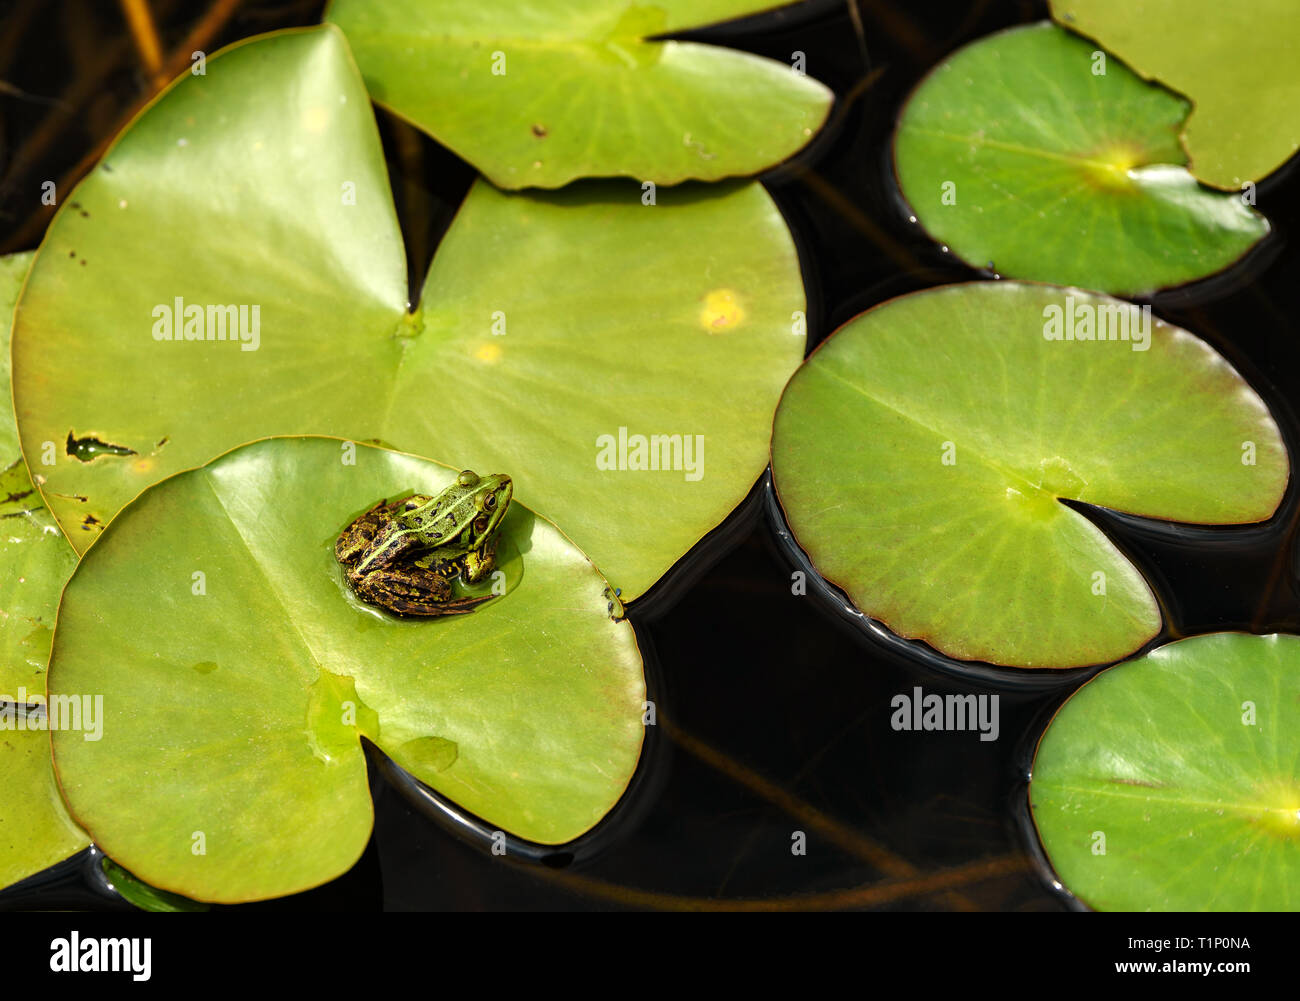 La grenouille comestible (Pelophylax kl. esculentus) - Grenouille commune européenne assis sur une feuille dans l'étang. Banque D'Images